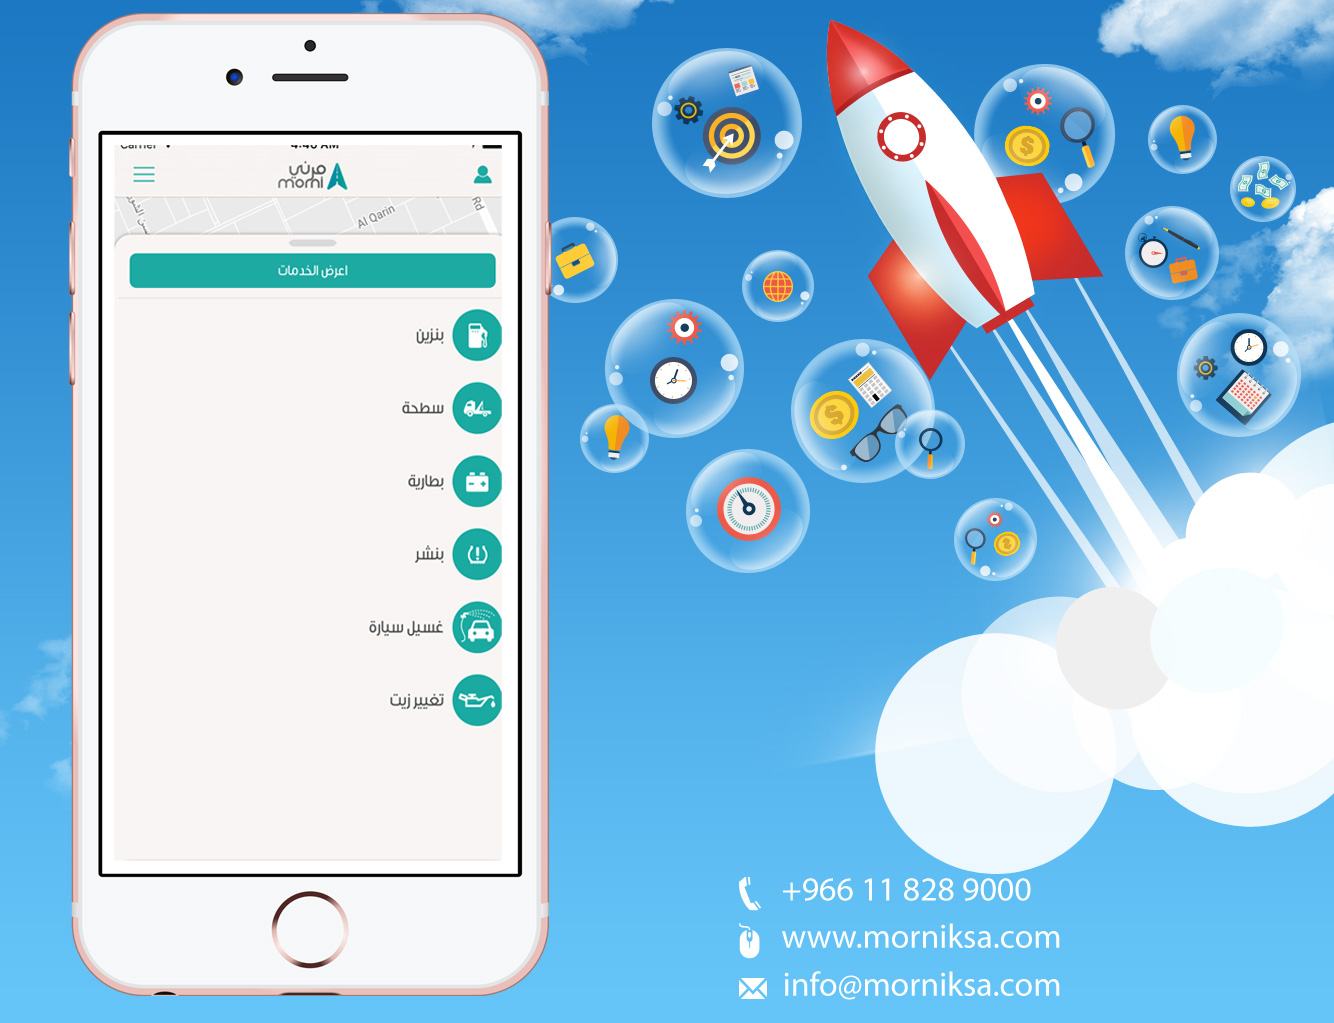 MorniKSA App